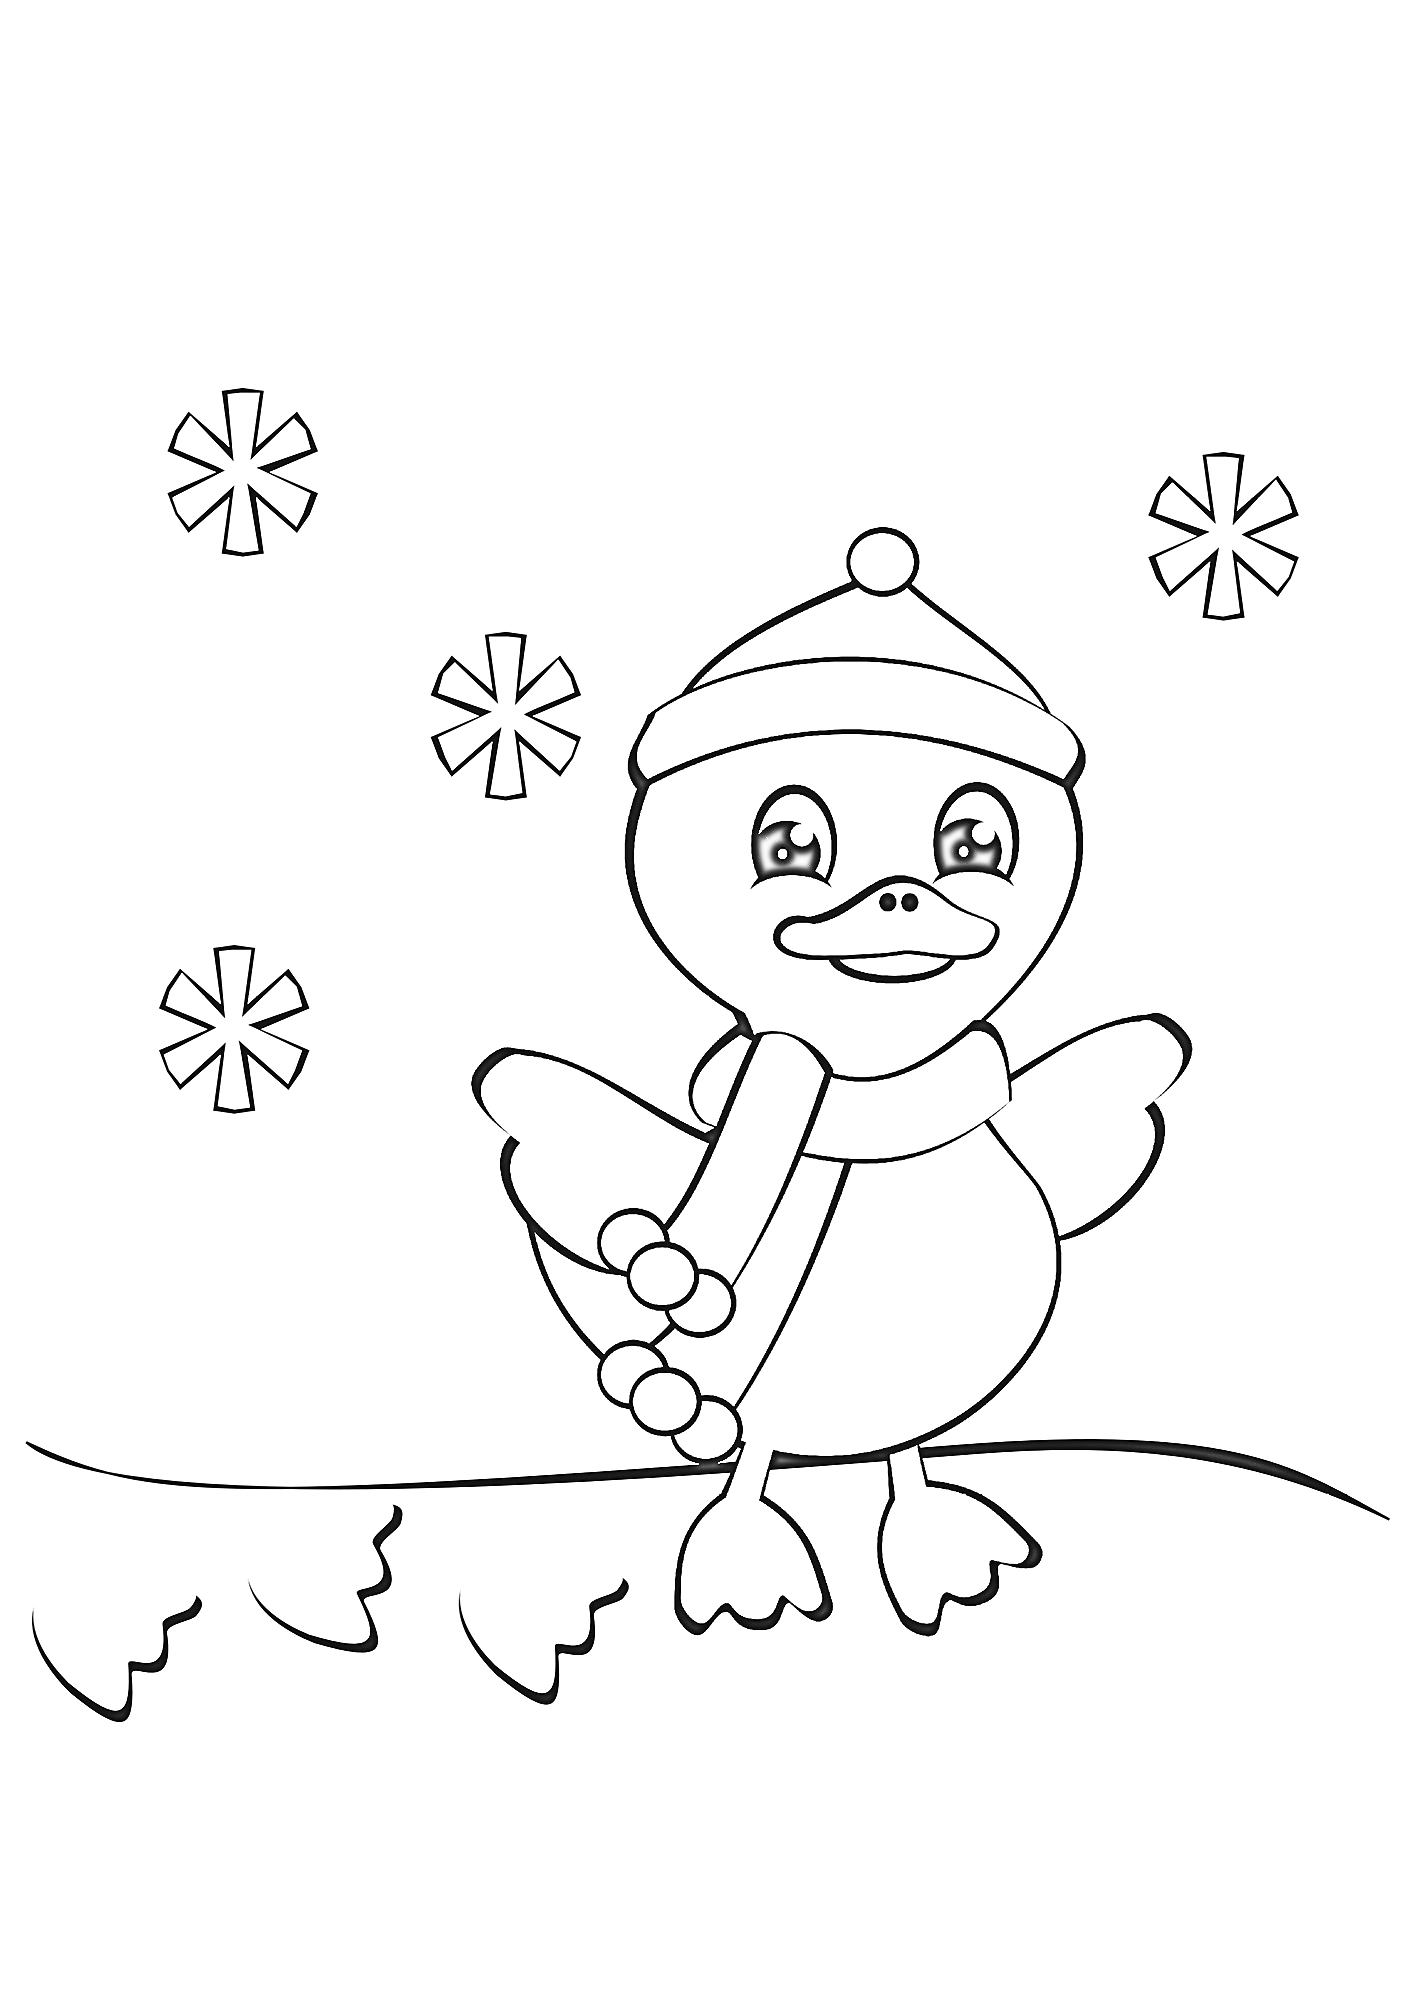 Раскраска Утёнок в шапке и шарфе на снегу с падающими снежинками